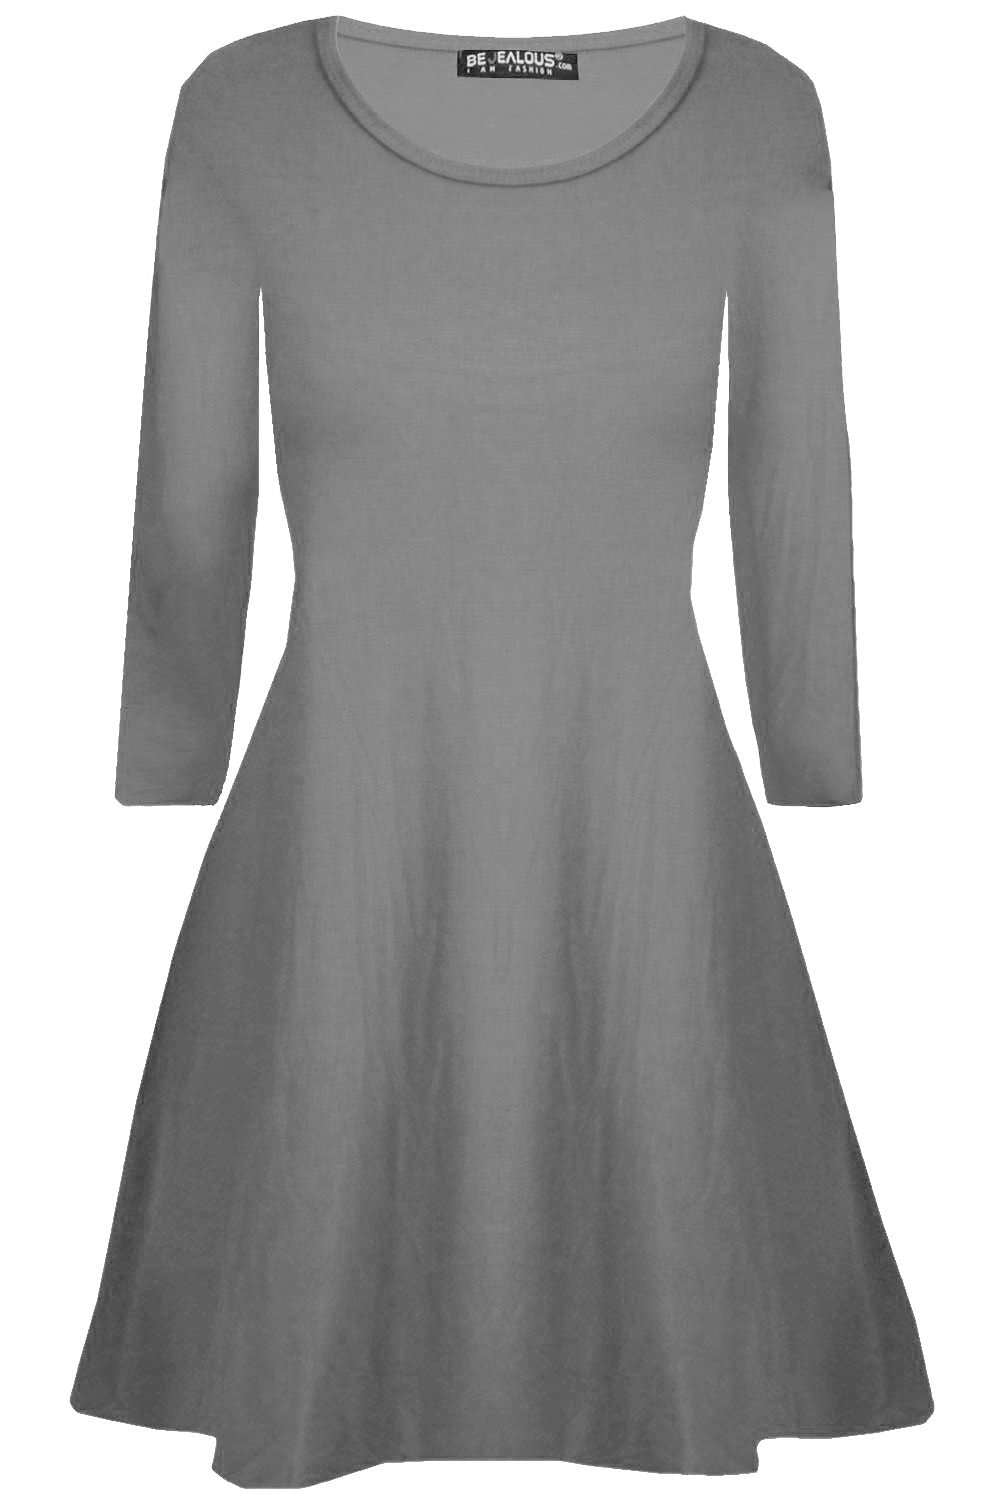 Lottie Plus Long Sleeve Mini Swing Dress - bejealous-com